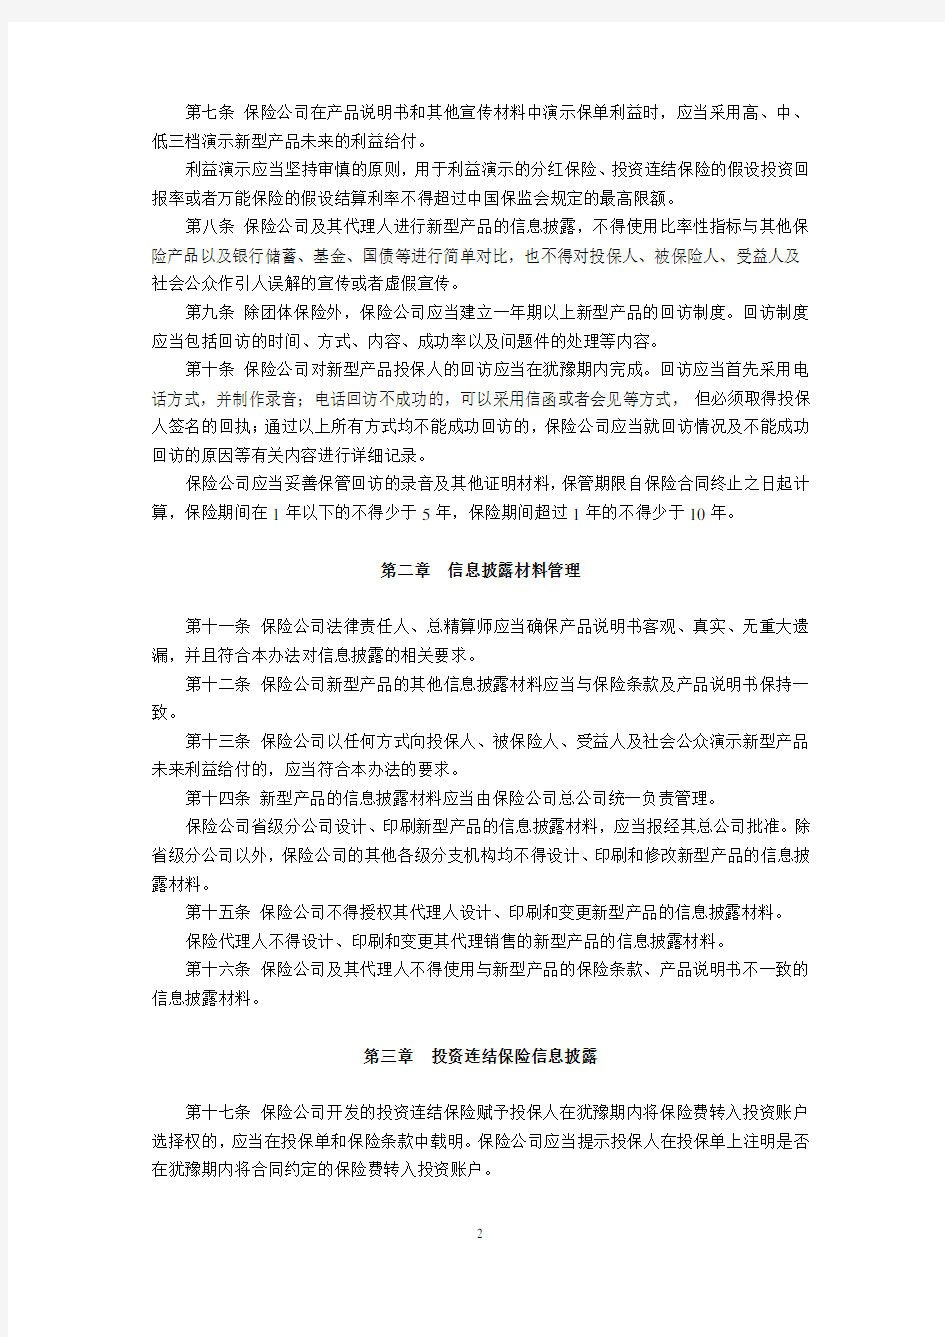 人身保险新型产品信息披露管理办法(中国保险监督管理委员会令2009年第2号,2009年10月1日起施行)